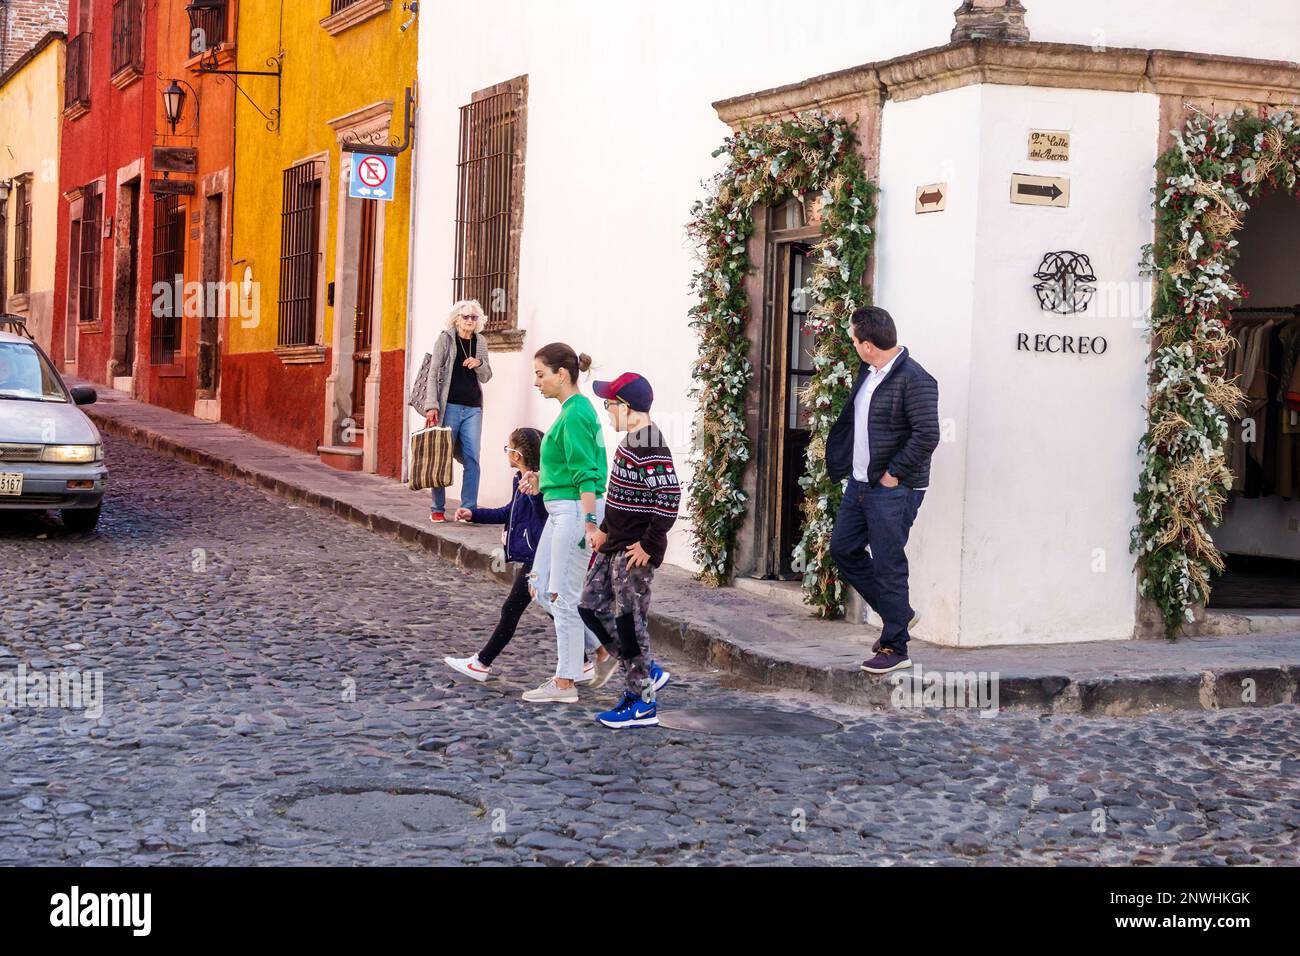 San Miguel de Allende Guanajuato Mexiko, historisches Zentrum des historischen Stadtzentrums, Kopfsteinpflasterstraße, Calle Recreo, koloniale Architektur, männliche Männer, wo Stockfoto